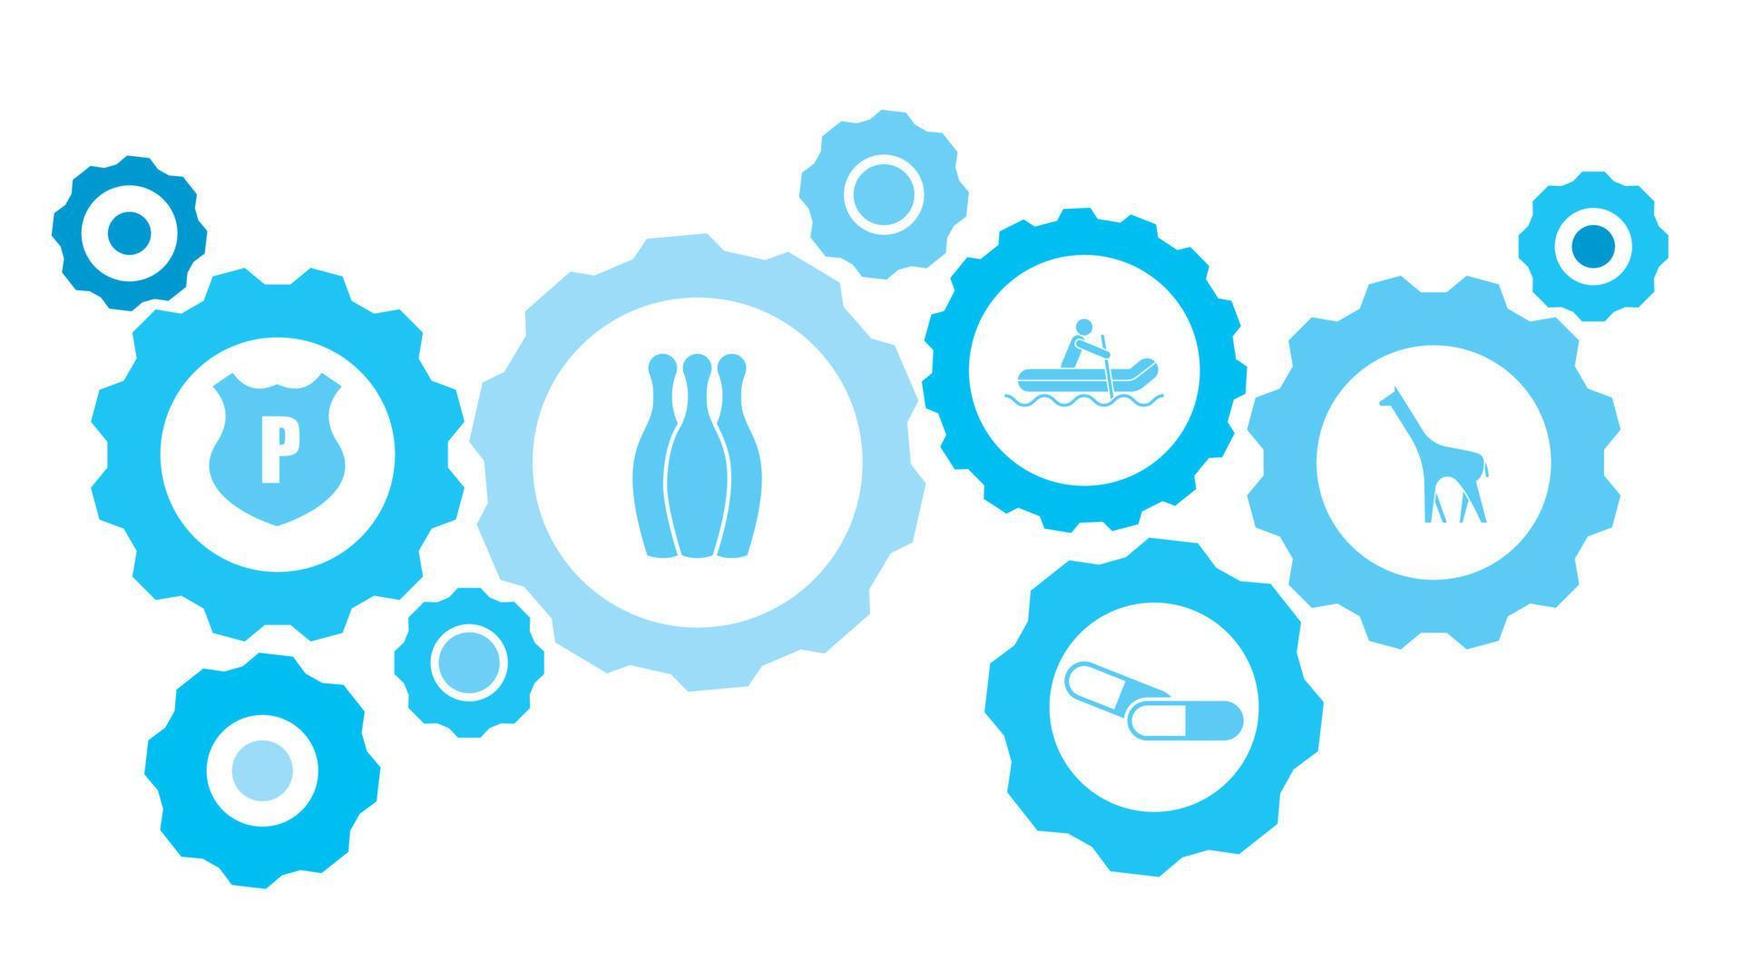 giraff redskap blå ikon uppsättning. abstrakt bakgrund med ansluten kugghjul och ikoner för logistik, service, frakt, distribution, transport, marknadsföra, kommunicera begrepp vektor